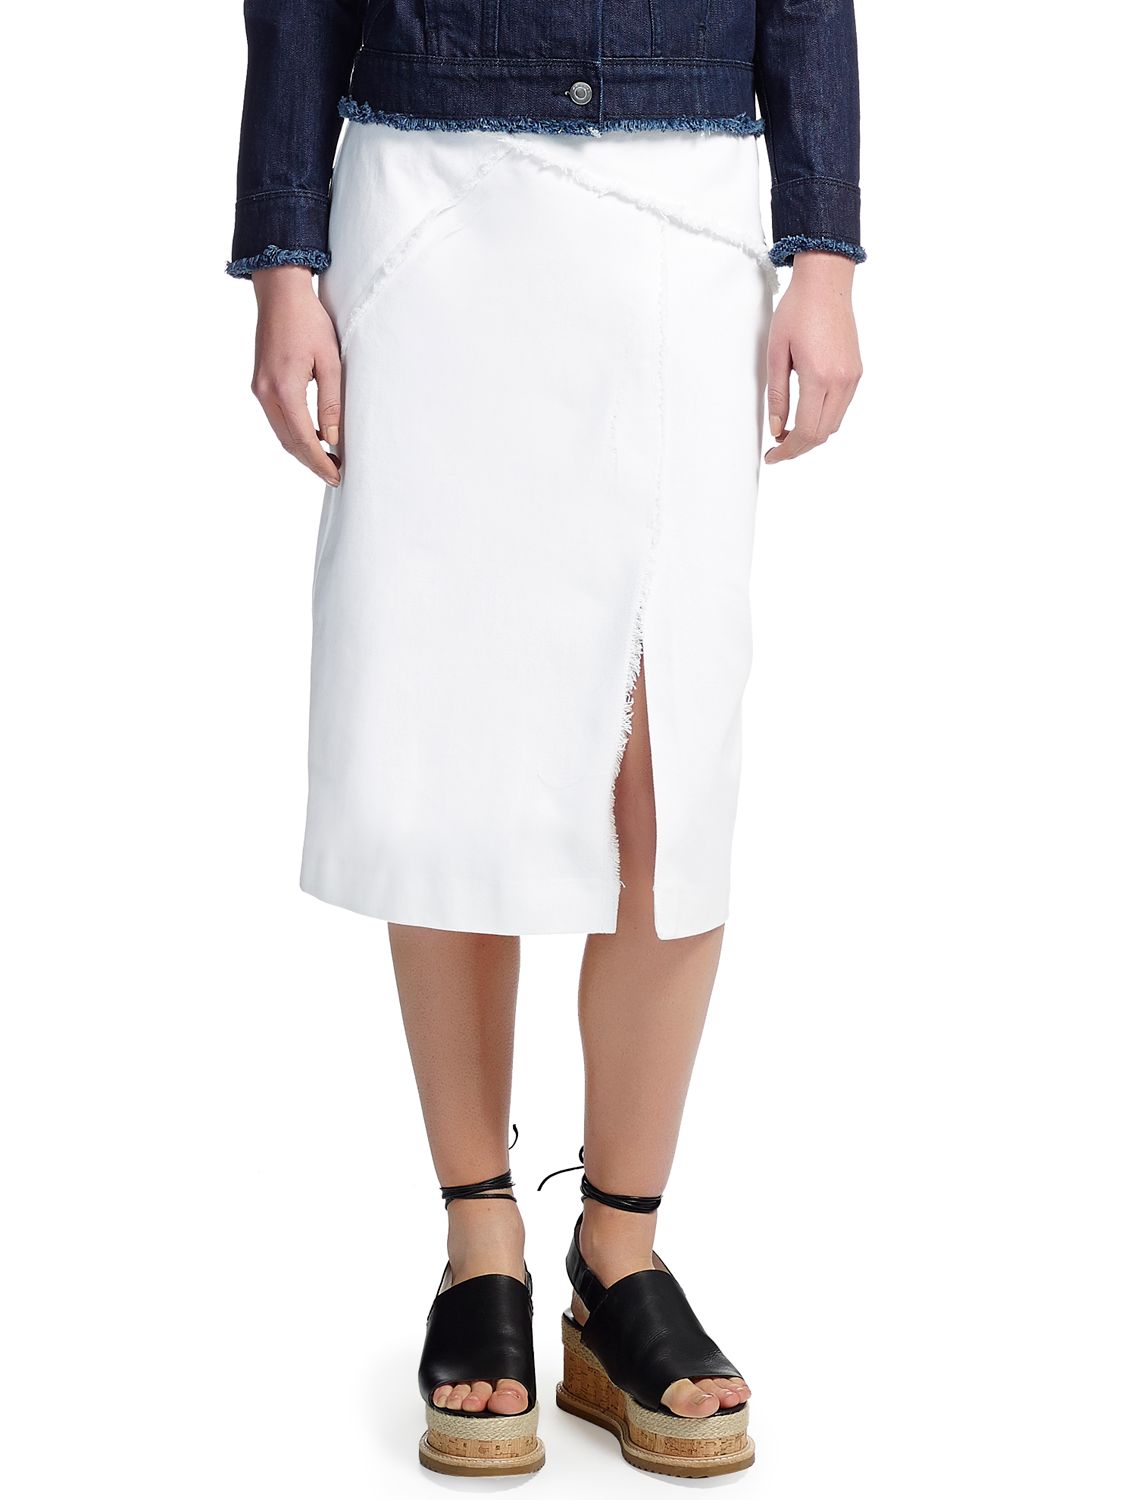 white frayed denim skirt